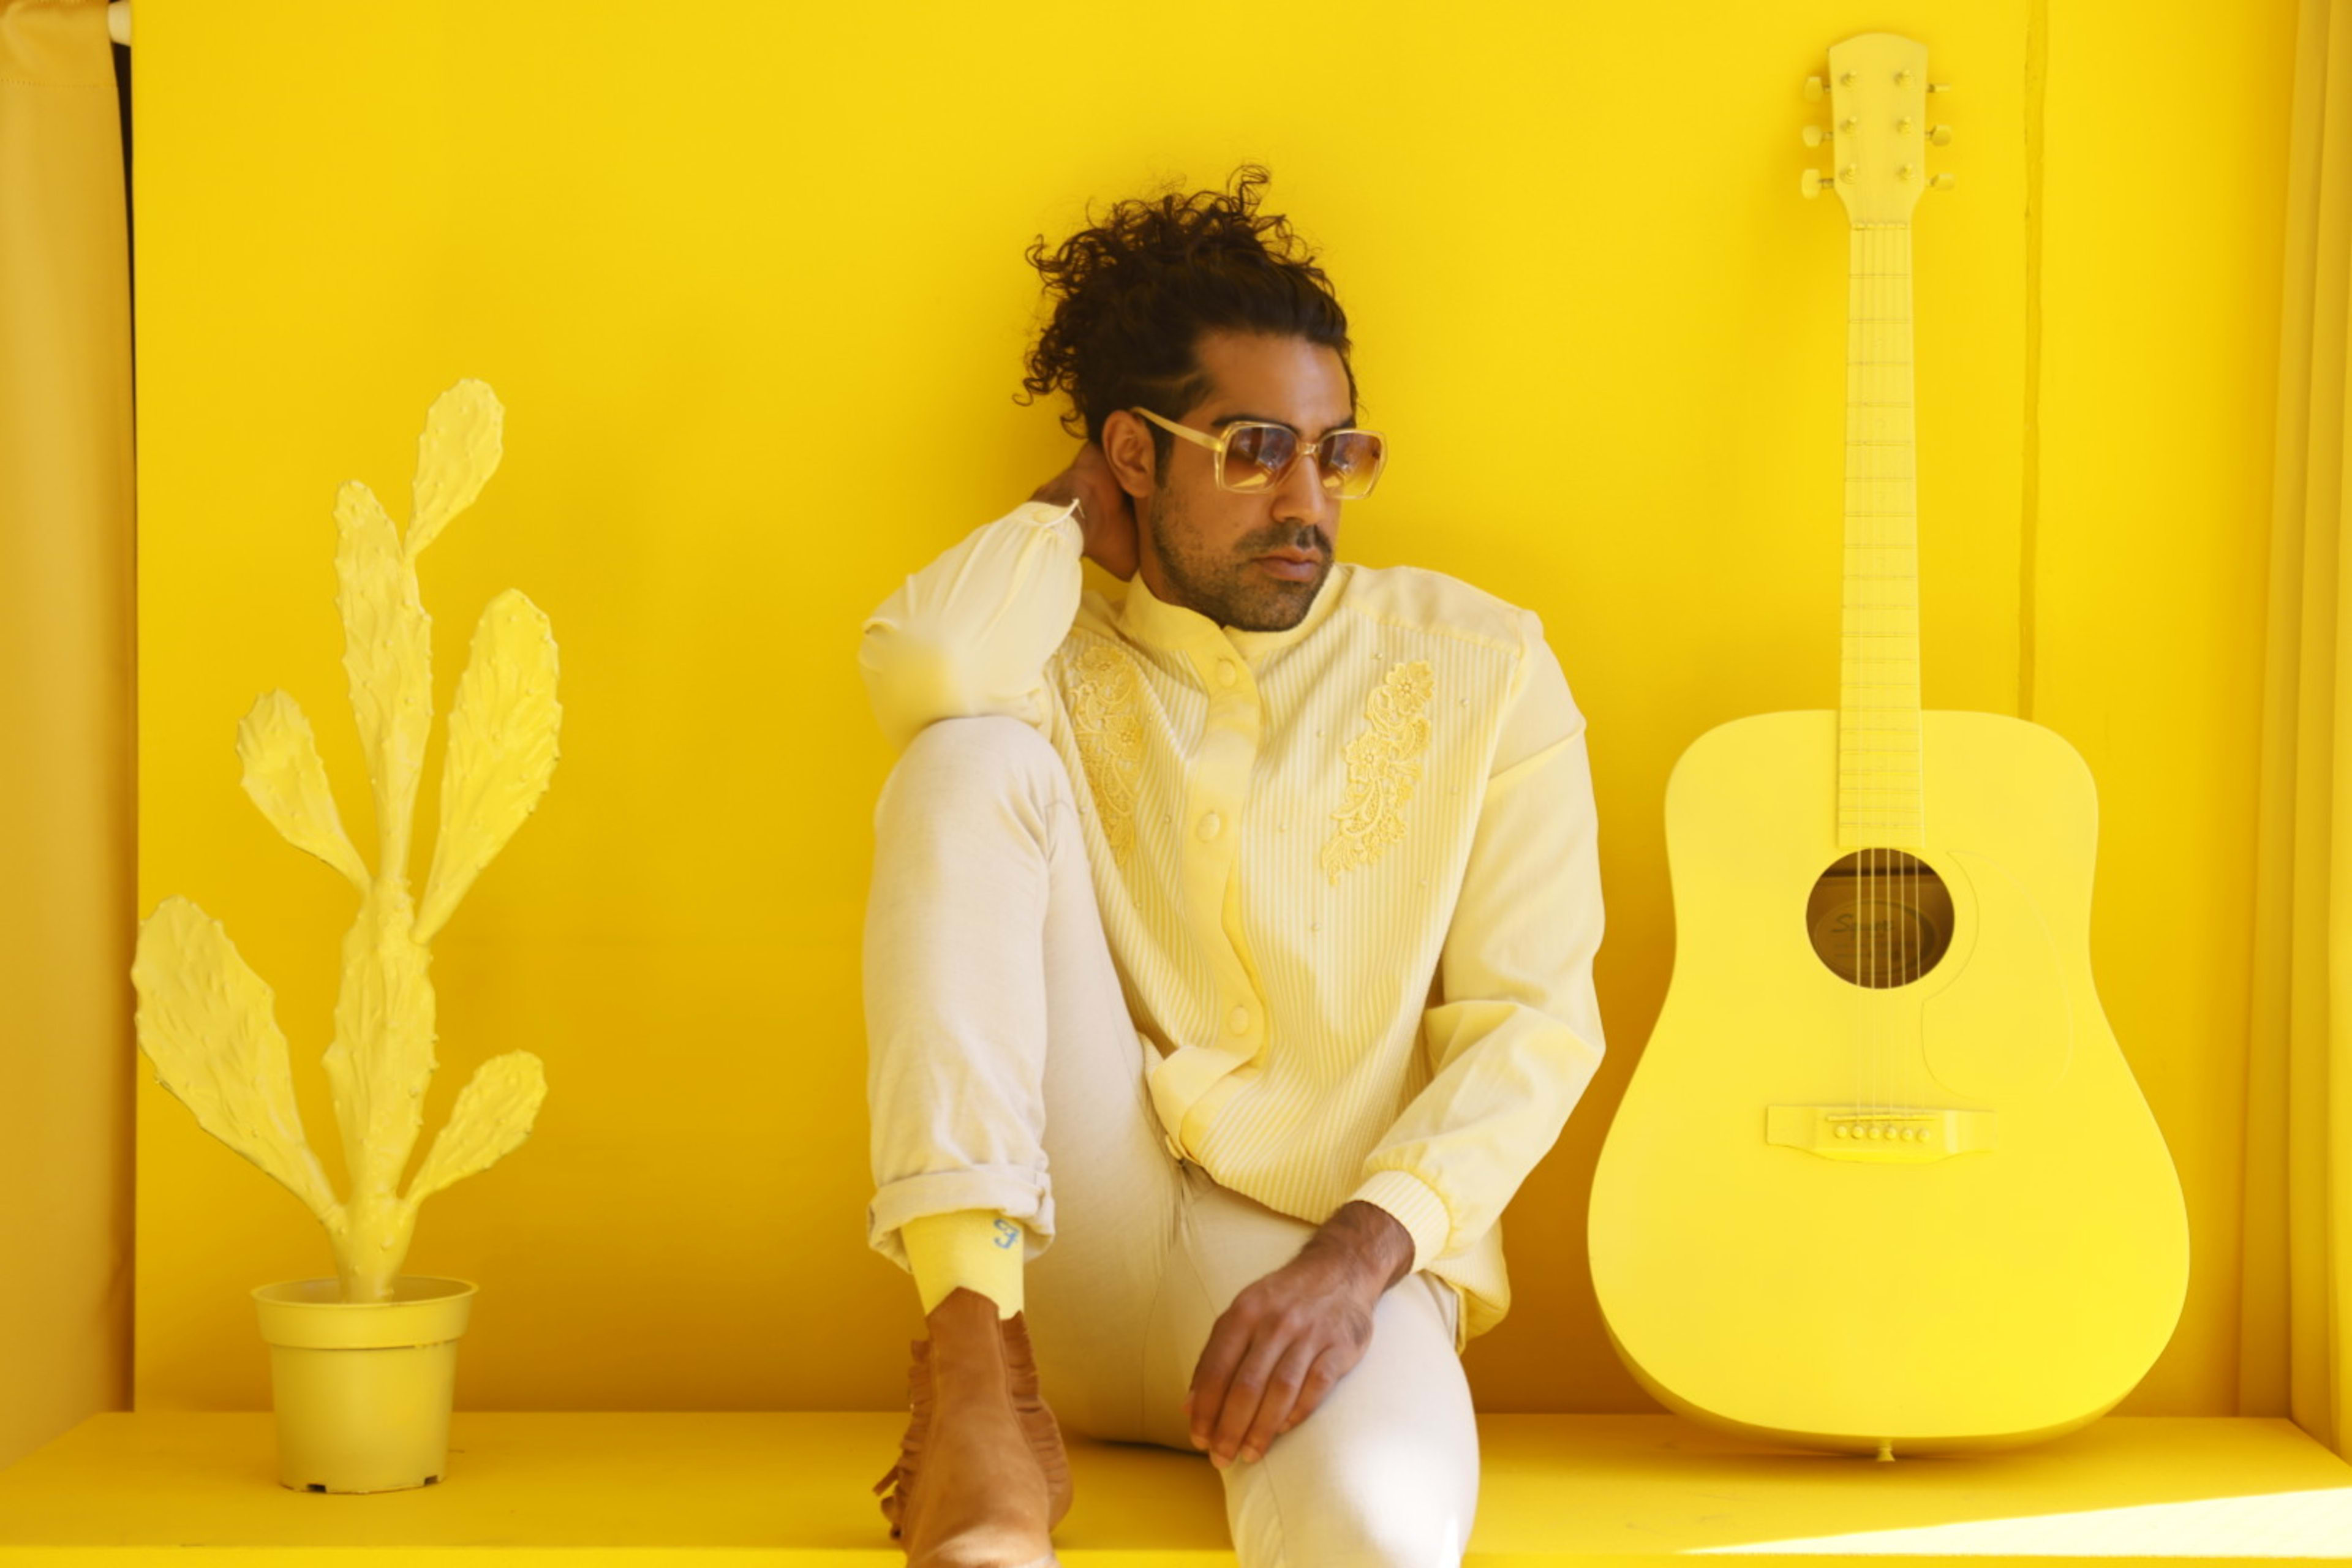 Una sesión de fotos retro protagonizada por un hombre sentado en una estantería amarilla con una guitarra.